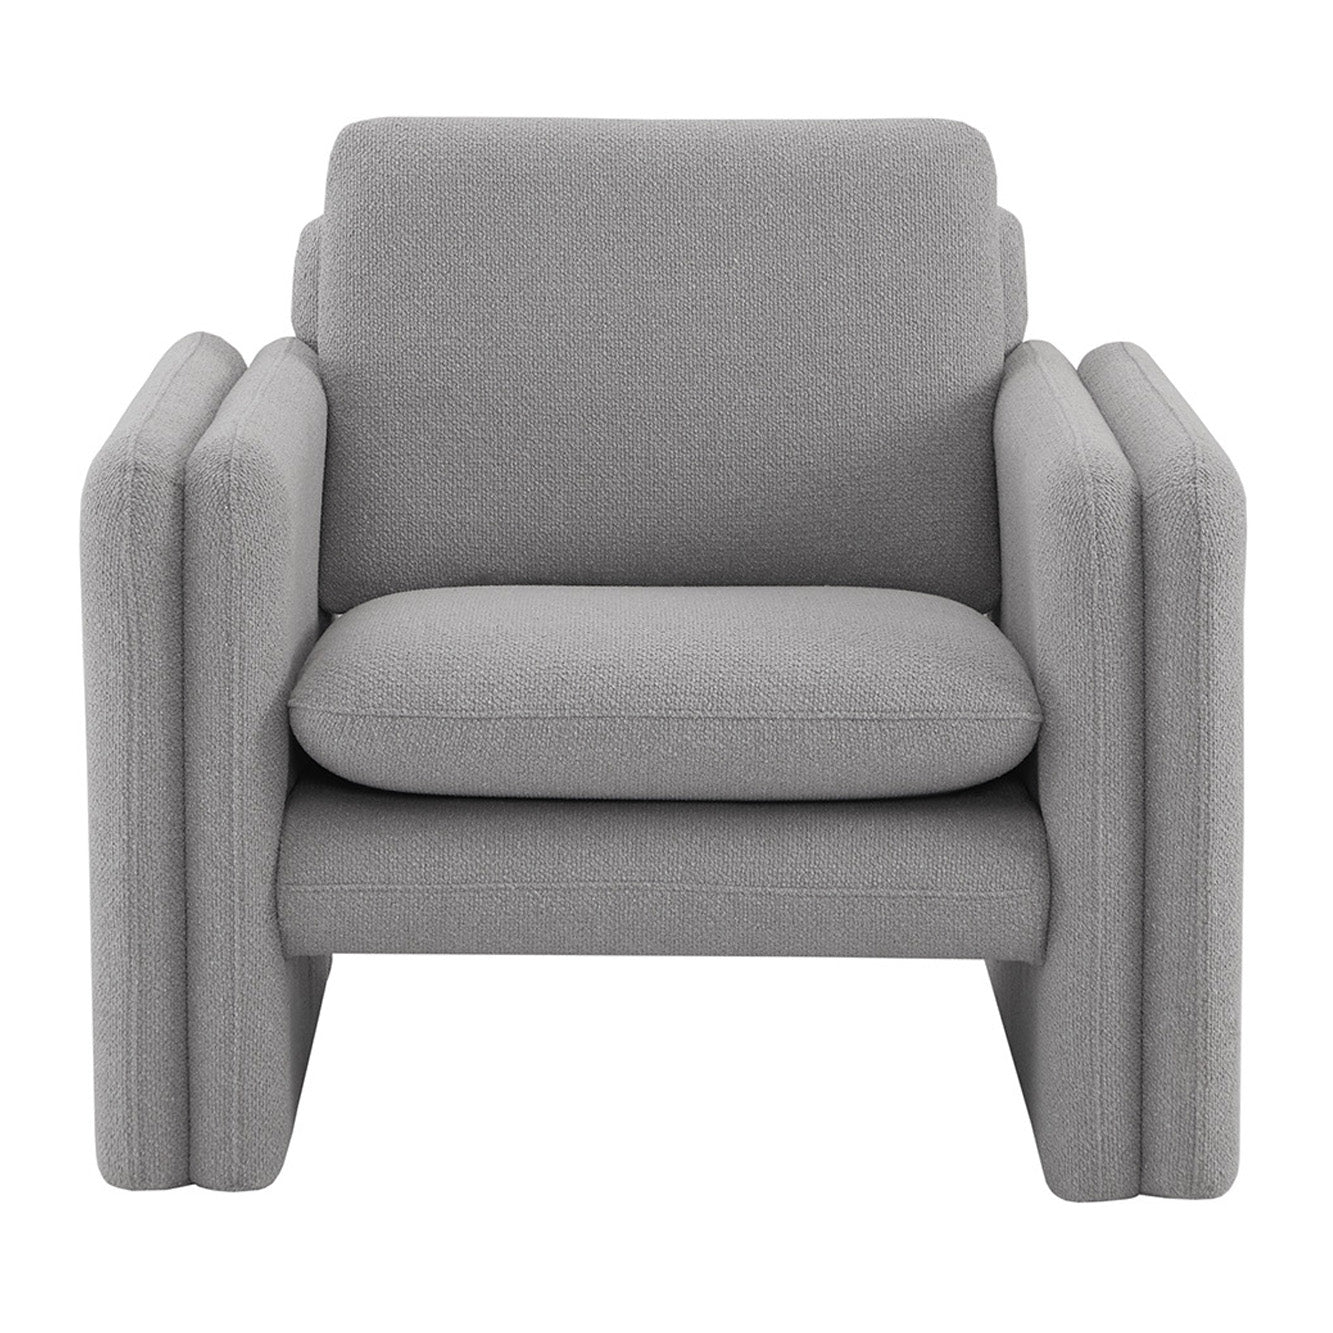 CHITA LIVING-Kallen Modern Lounge Armchair-Accent Chair-Grey--